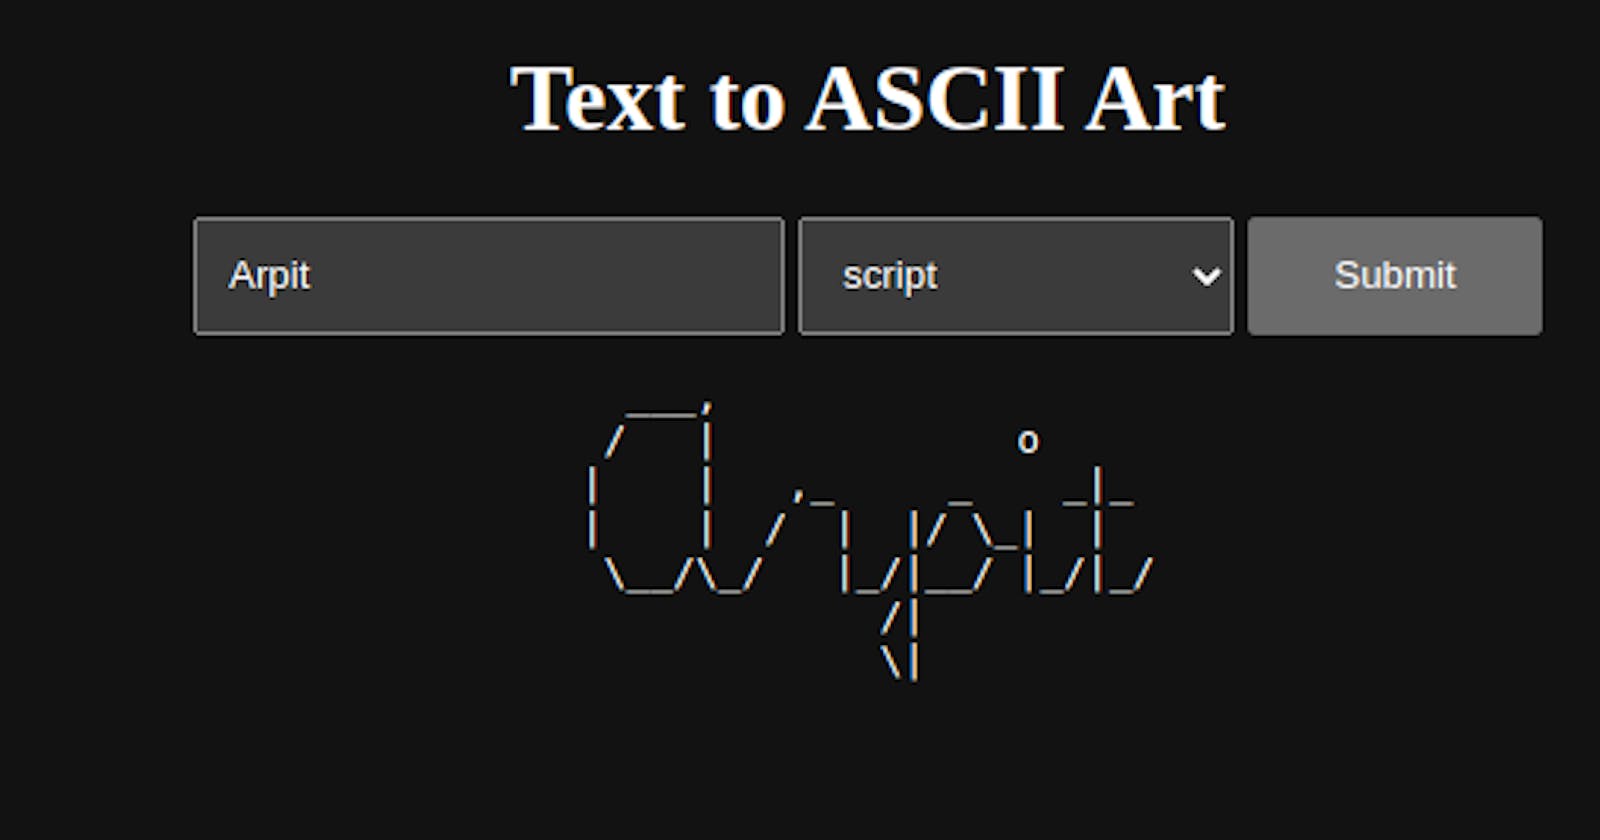 Mini Project: Text to ASCII Art in Django